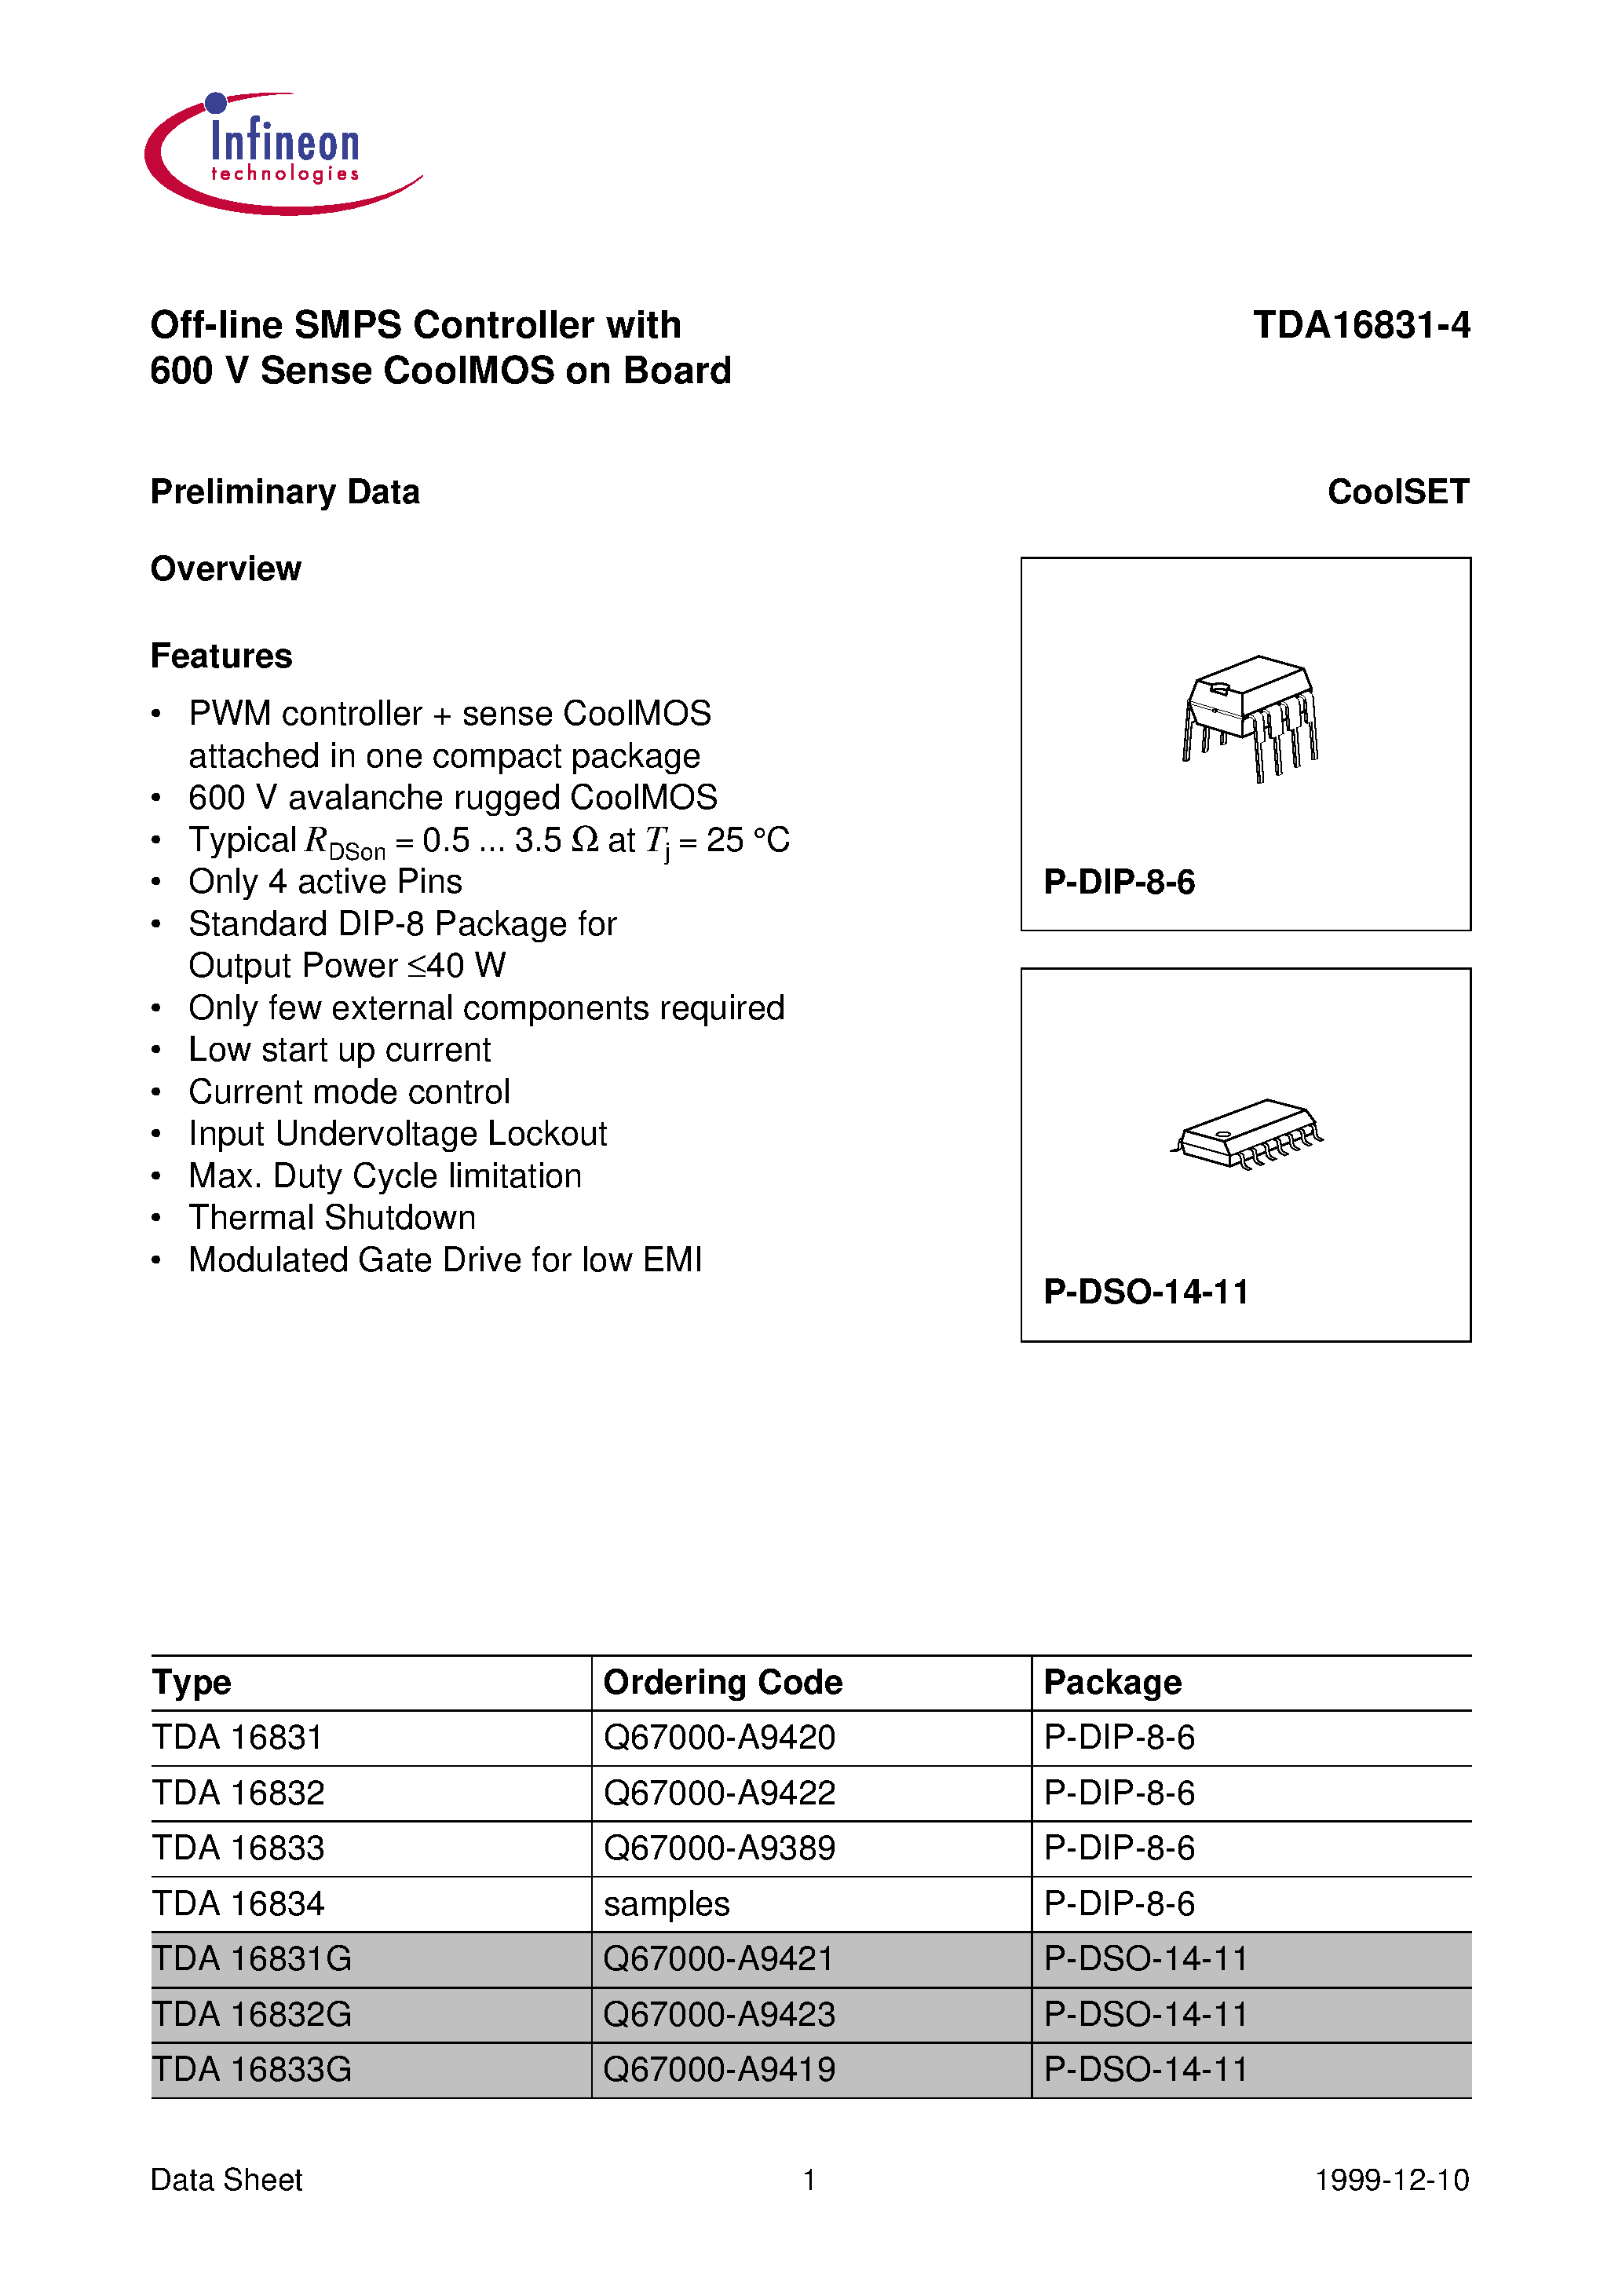 Даташит TDA16831 - (TDA16831 - TDA16834) Off-line SMPS Controller with 600 V Sense CoolMOS on Board страница 1